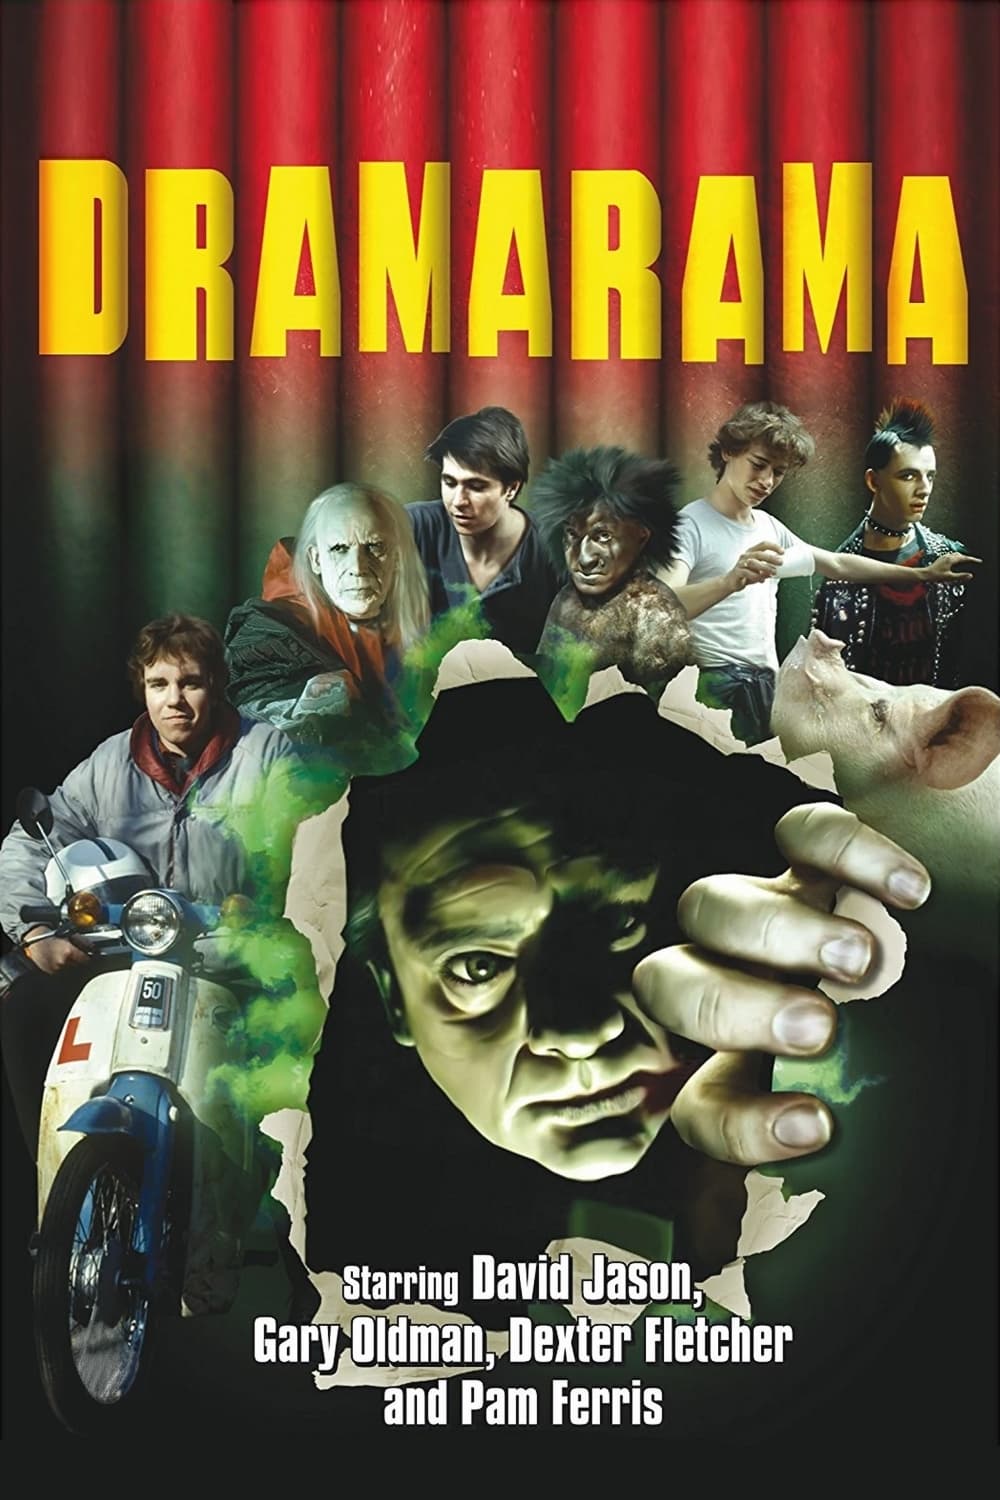 Dramarama (1983)